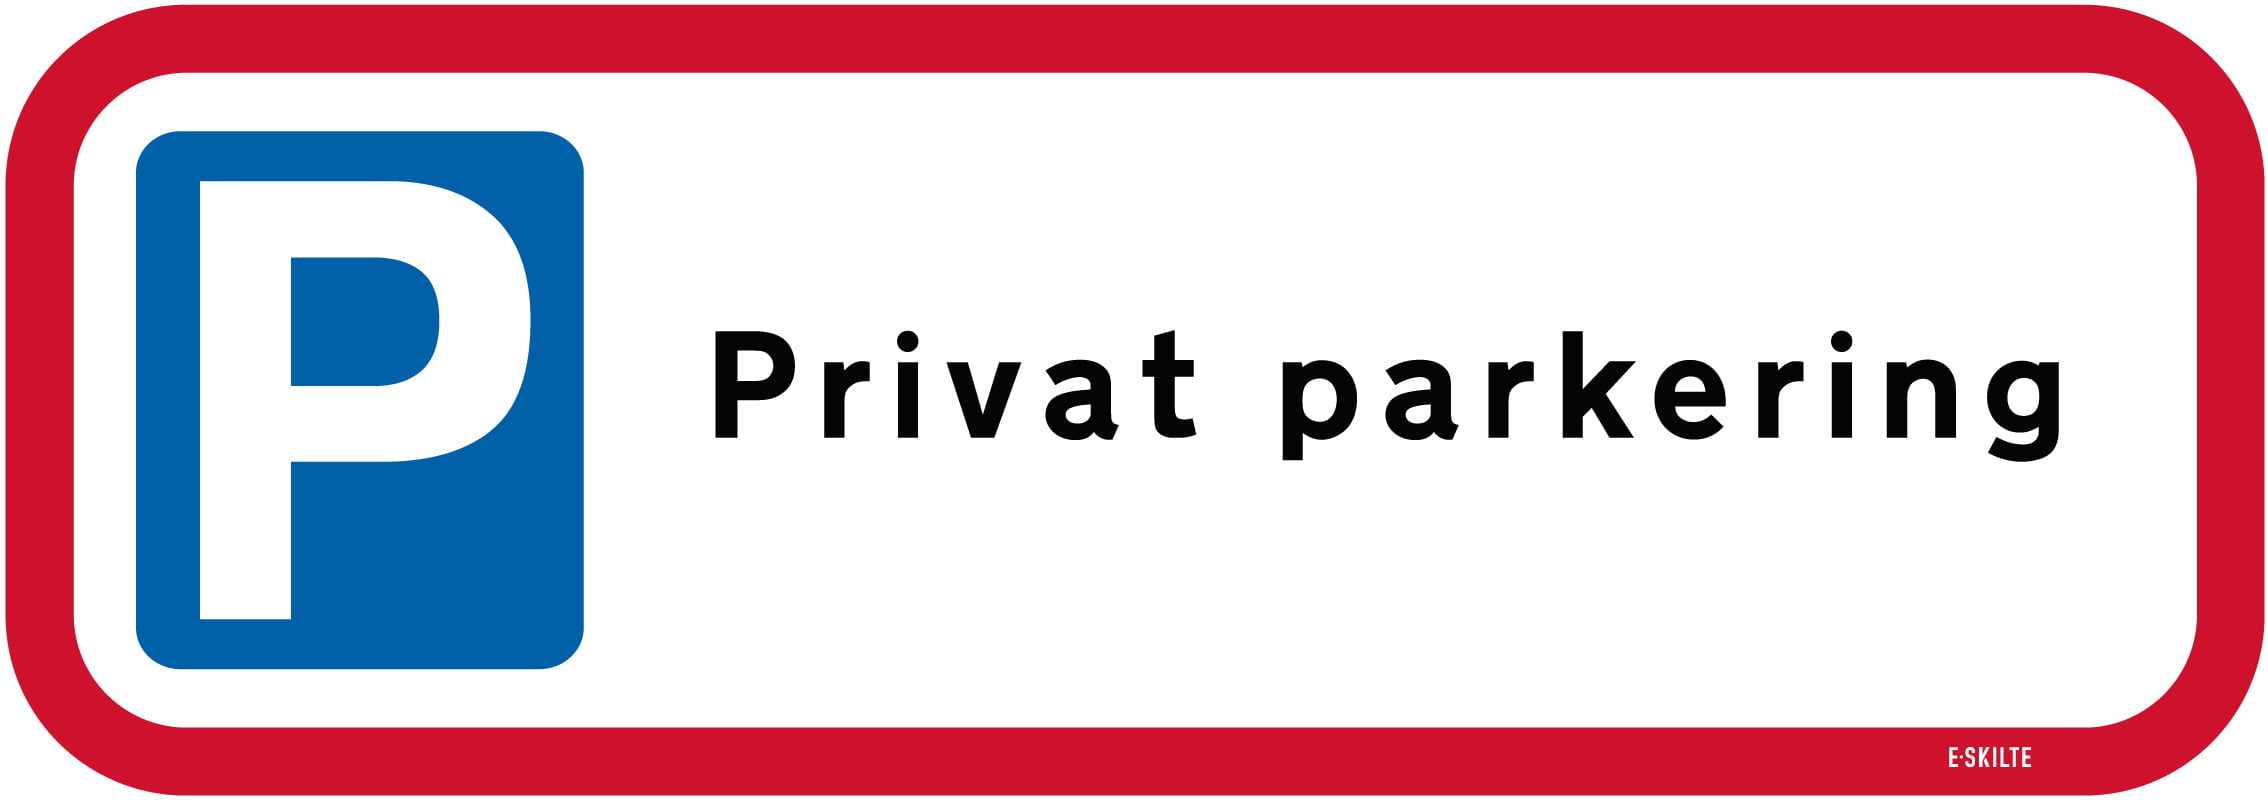 Privat parkering skilt